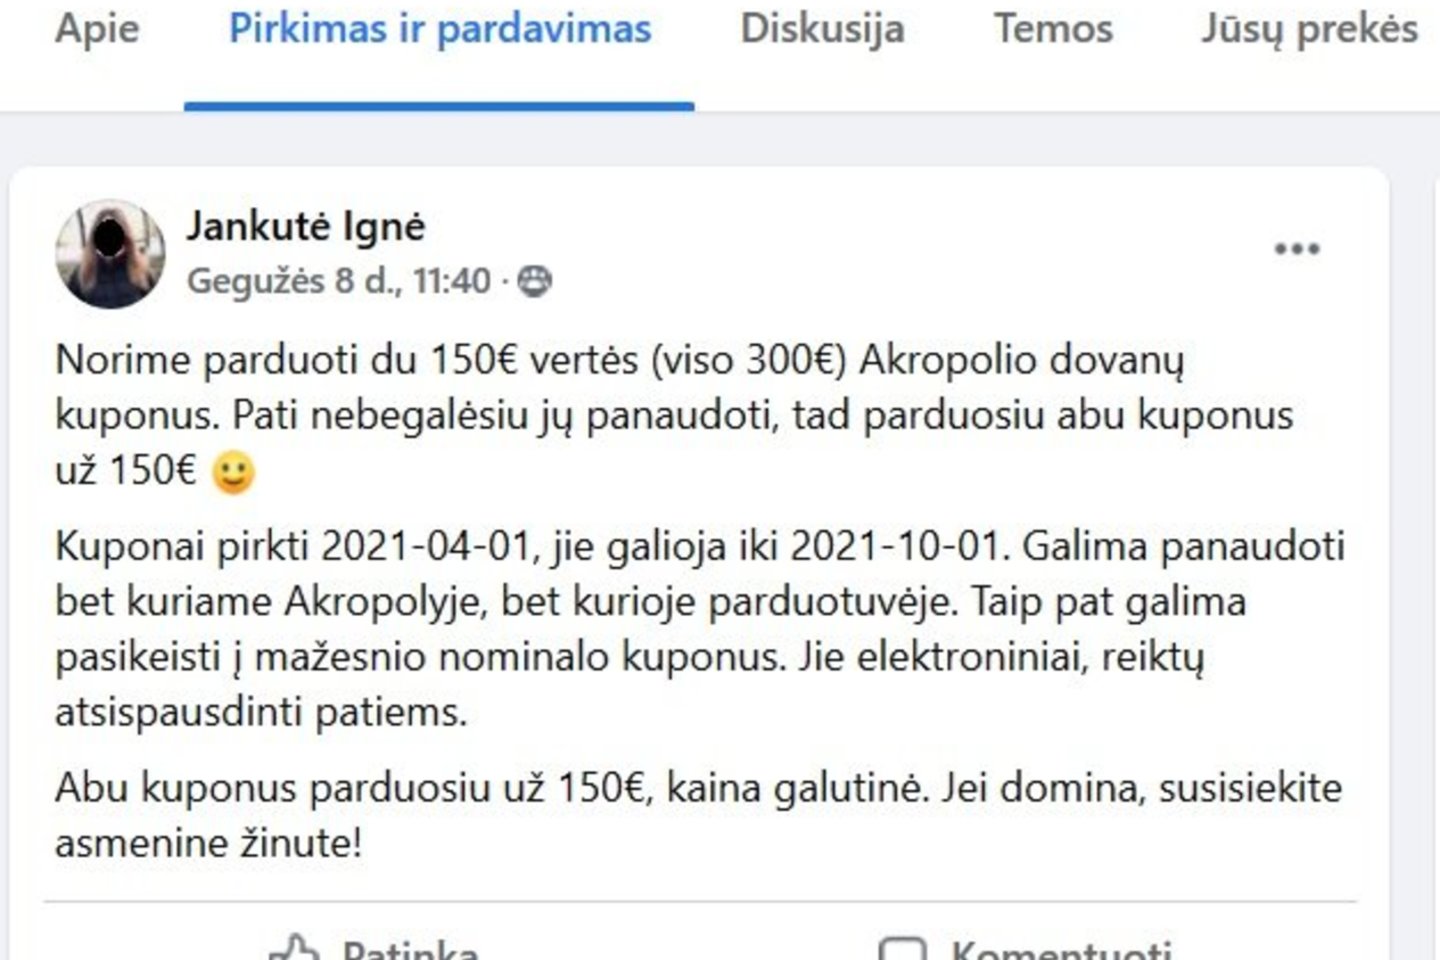  Policijos virtualus patrulis Feisbuke toliau įdėmiai stebi Ignę Jankutę – perspėja nepirkti iš jos „Akropolio“ kuponų.<br> Facebook/Policijos virtualus patrulis nuotr.